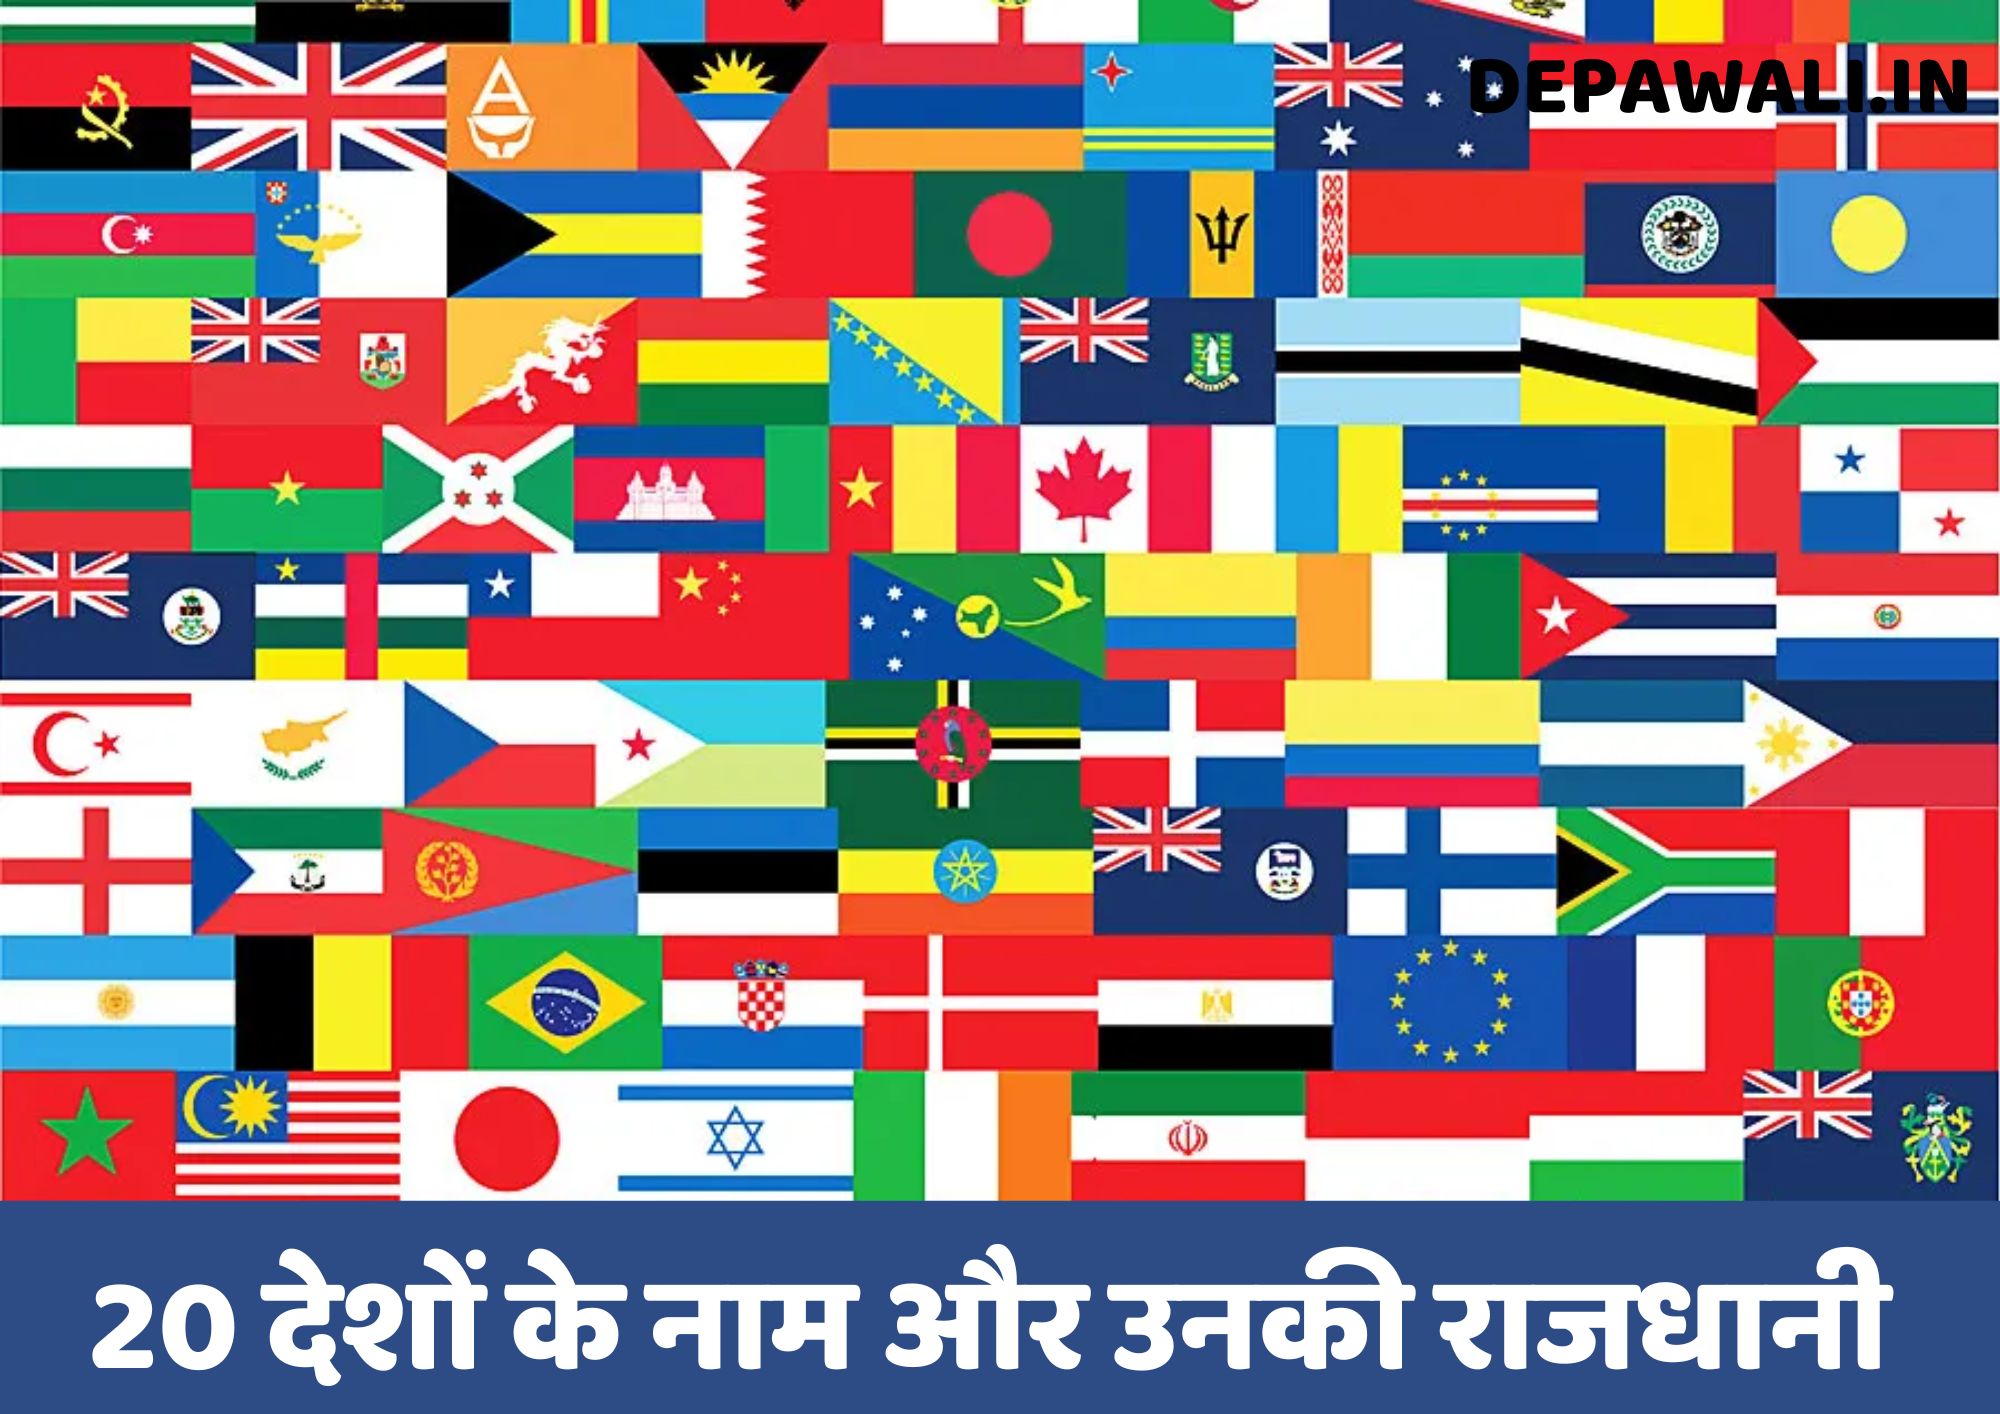 20 देशों के नाम और उनकी राजधानी (Names Of 20 Countries And Their Capitals In Hindi)